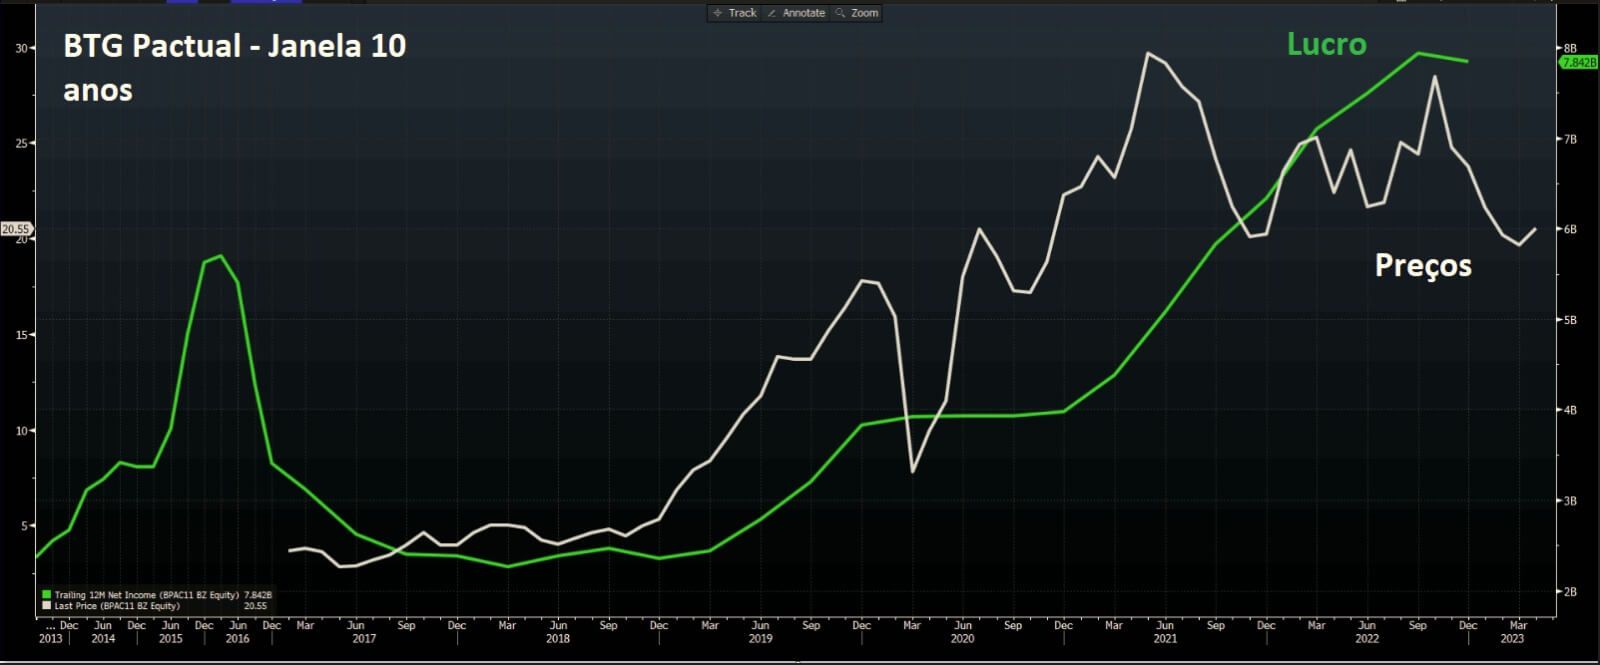 No gráfico, vemos o histórico de cotações de BPAC11 versus o lucro líquido da companhia em uma janela de 10 anos